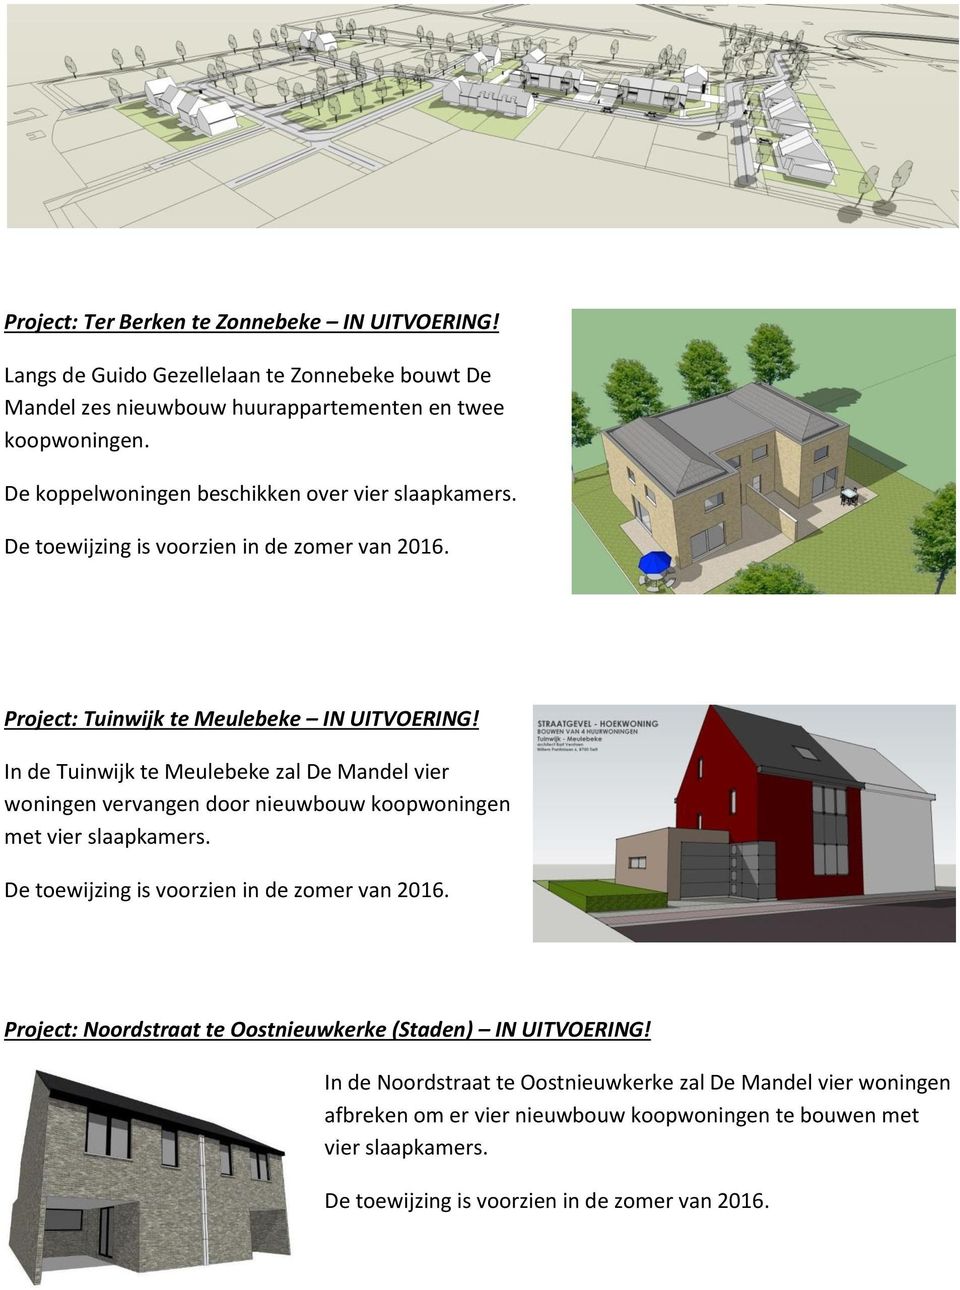 In de Tuinwijk te Meulebeke zal De Mandel vier woningen vervangen door nieuwbouw koopwoningen met vier slaapkamers. De toewijzing is voorzien in de zomer van 2016.